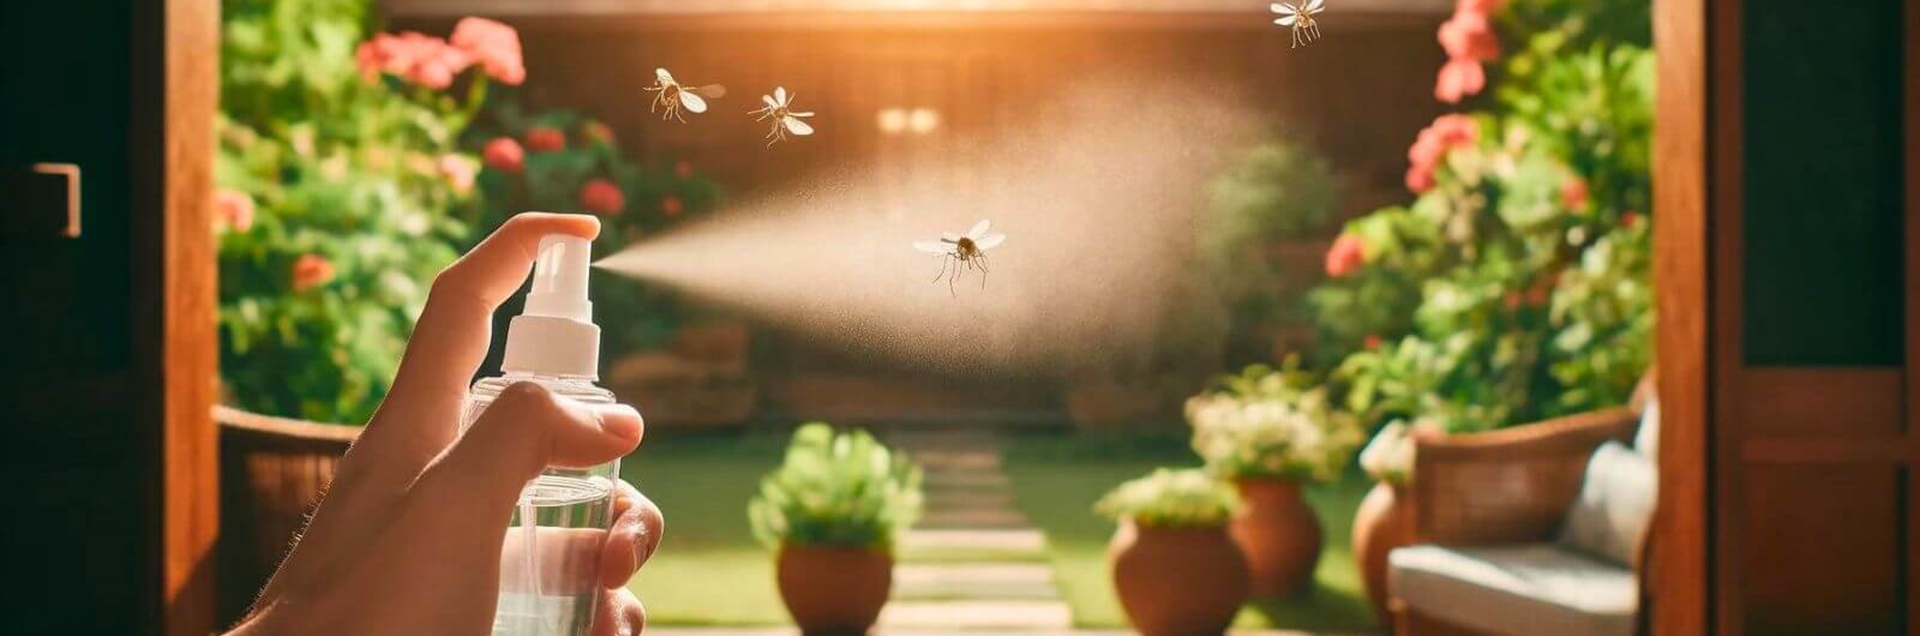 Come eliminare le zanzare con rimedi naturali